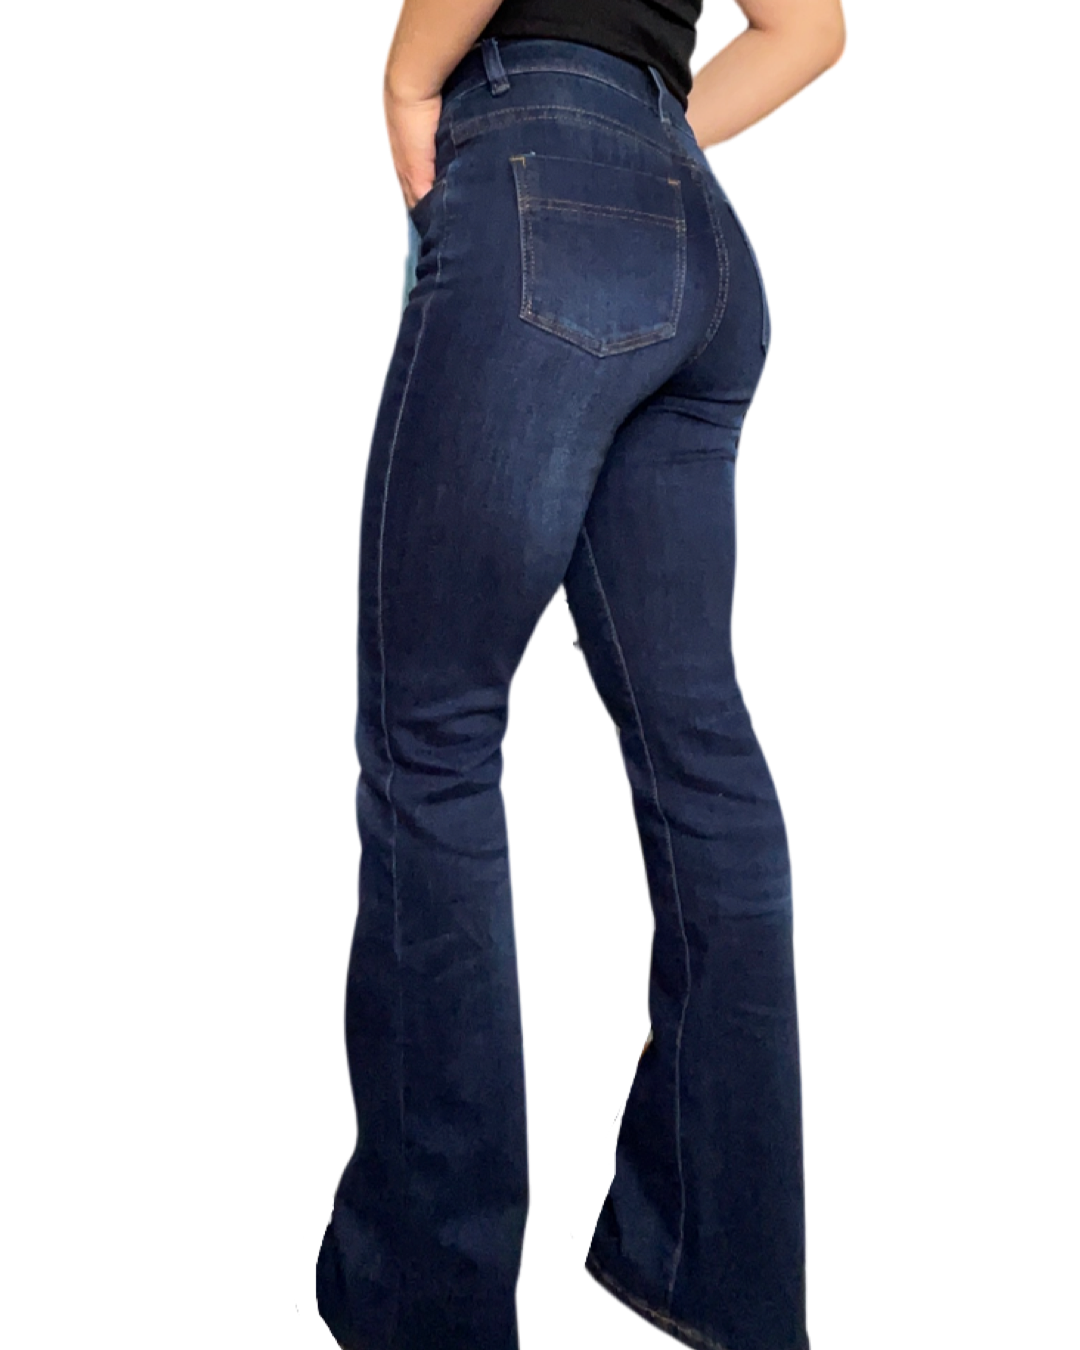 Jeans flare pour femme bleu foncé à taille haute avec camisole noire à l'intérieur.